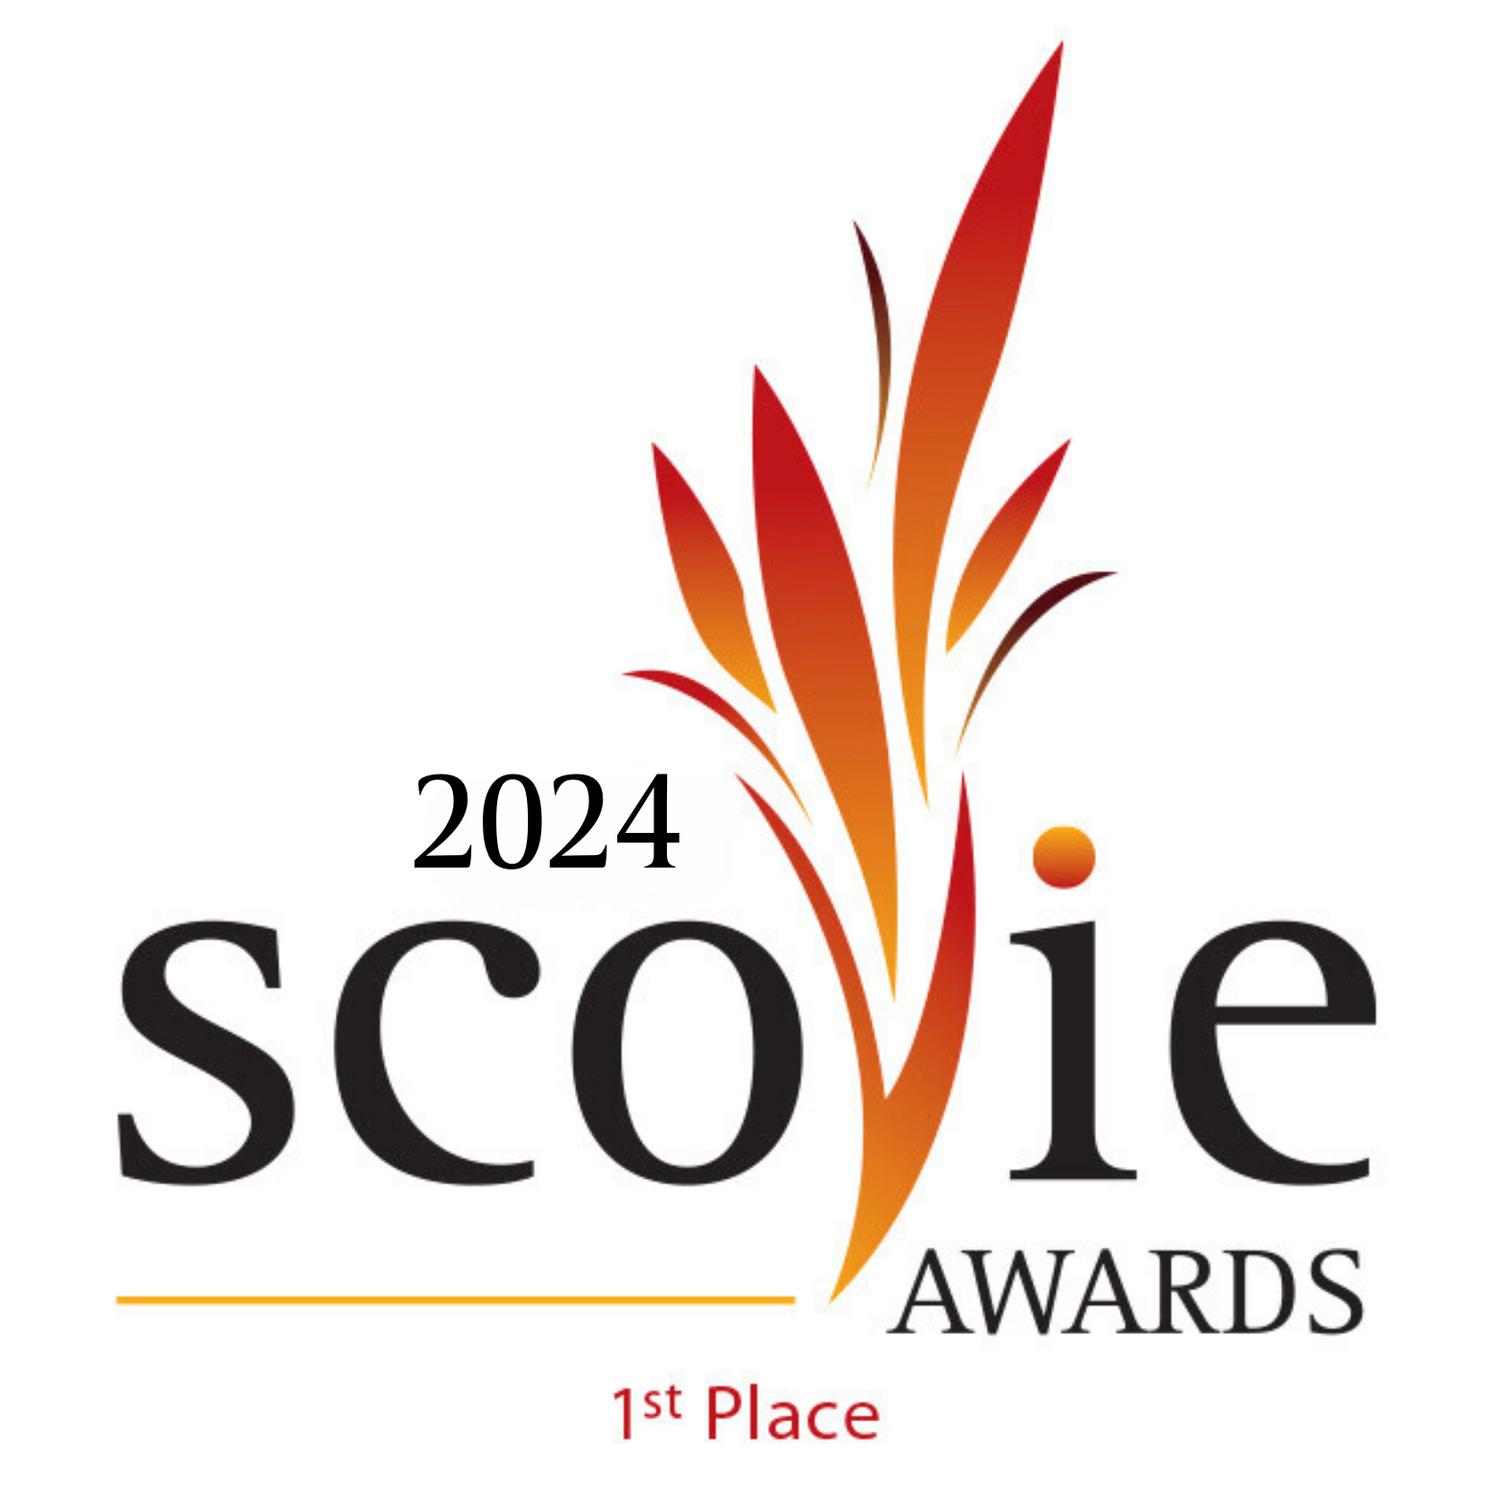 1st Place Scovie Award winning Molé